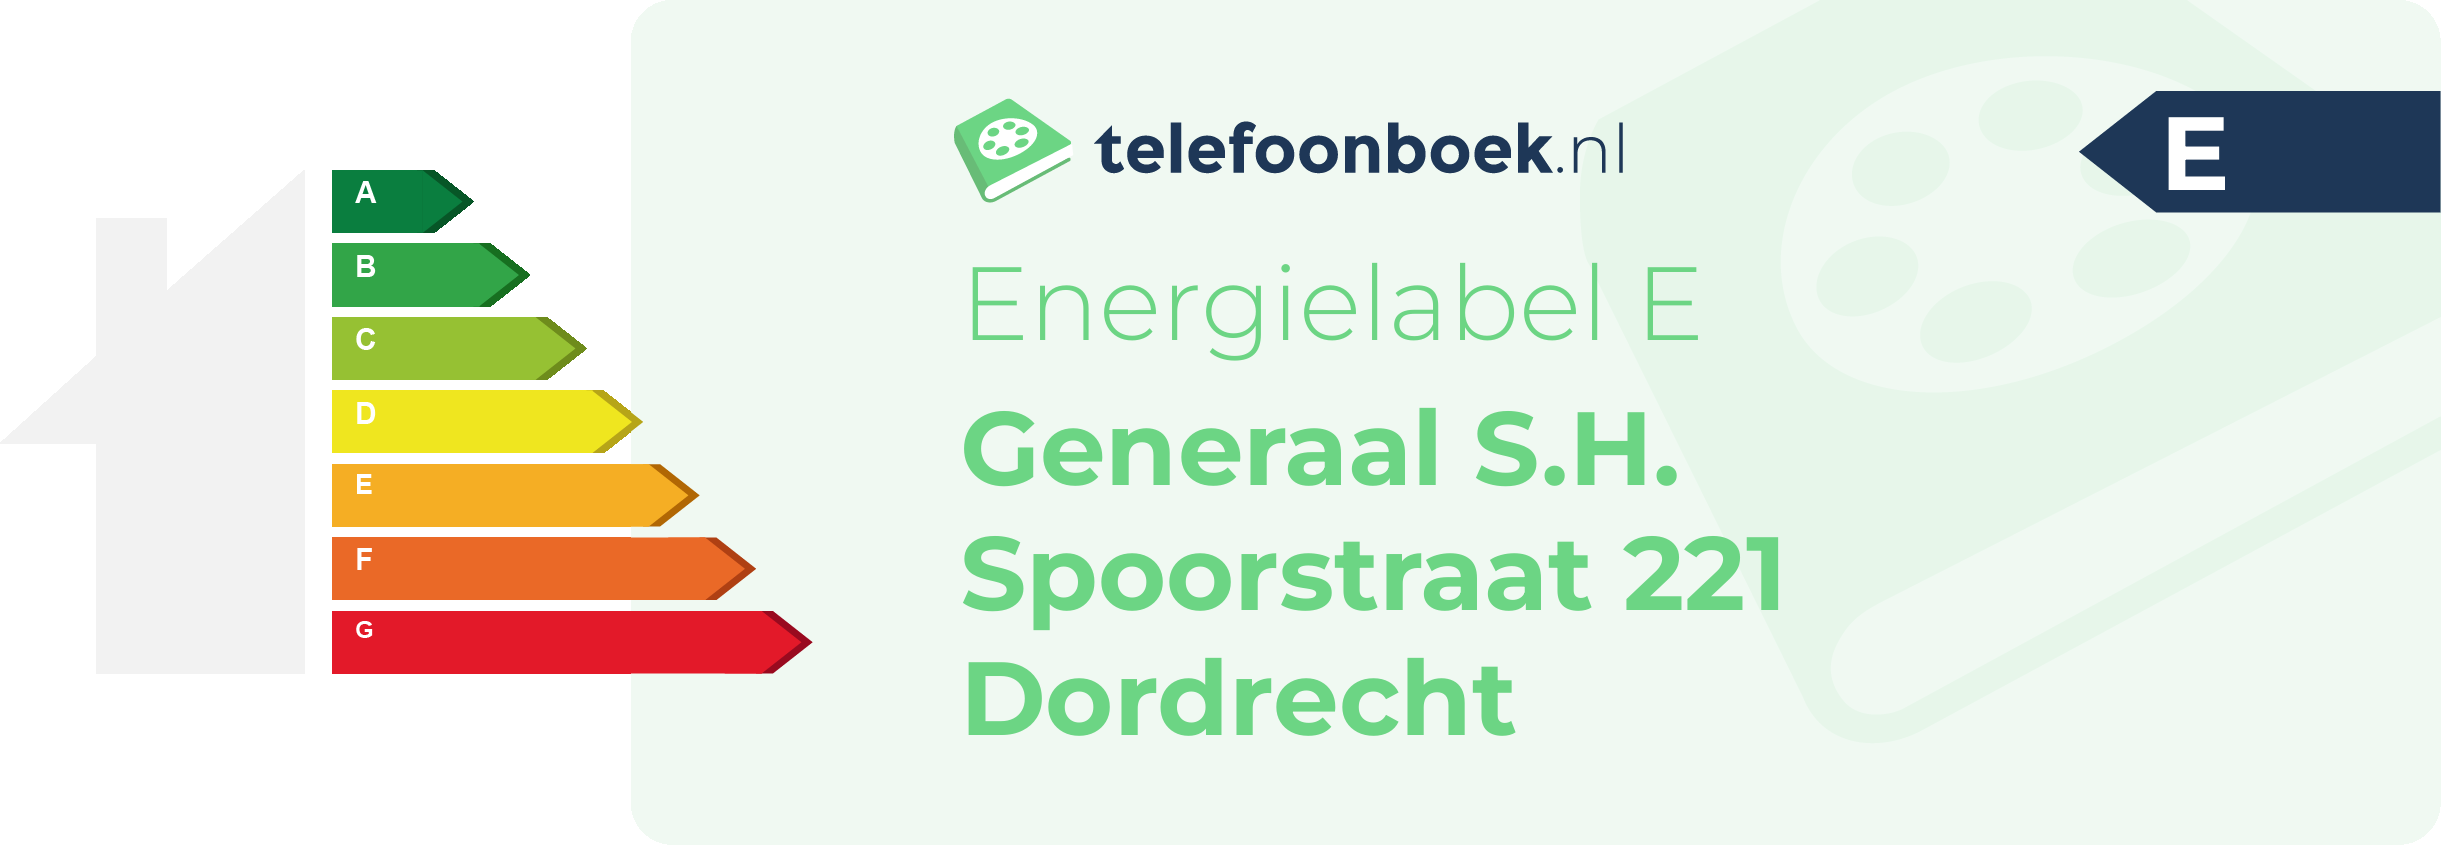 Energielabel Generaal S.H. Spoorstraat 221 Dordrecht